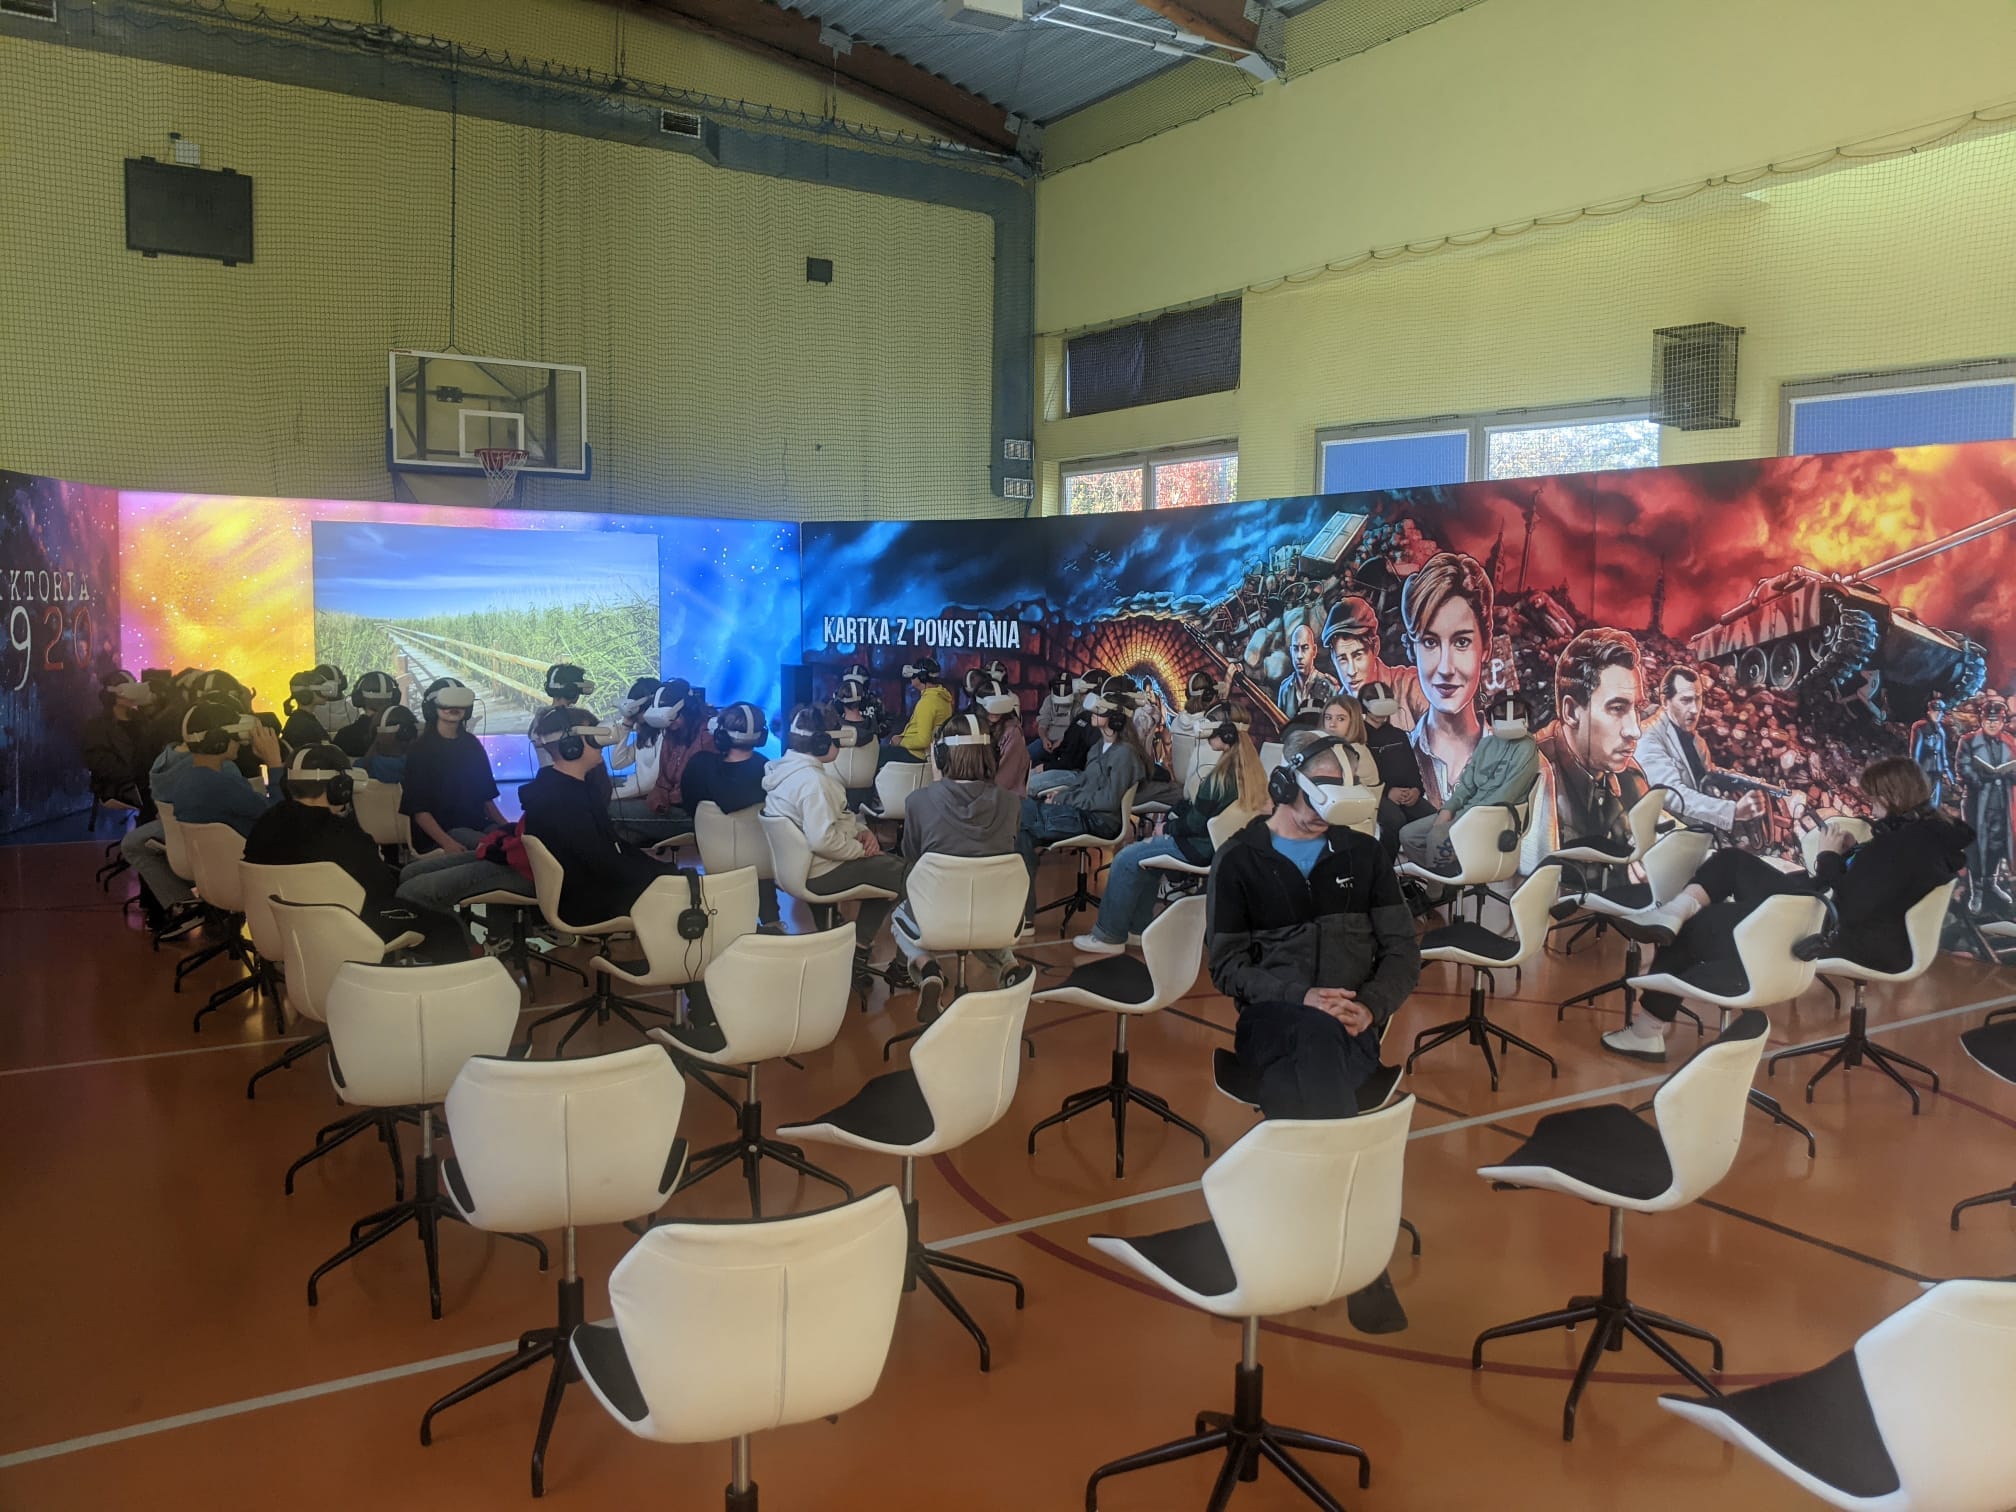 Uczniowie siedzą na krzesłach z założonymi googlami VR 